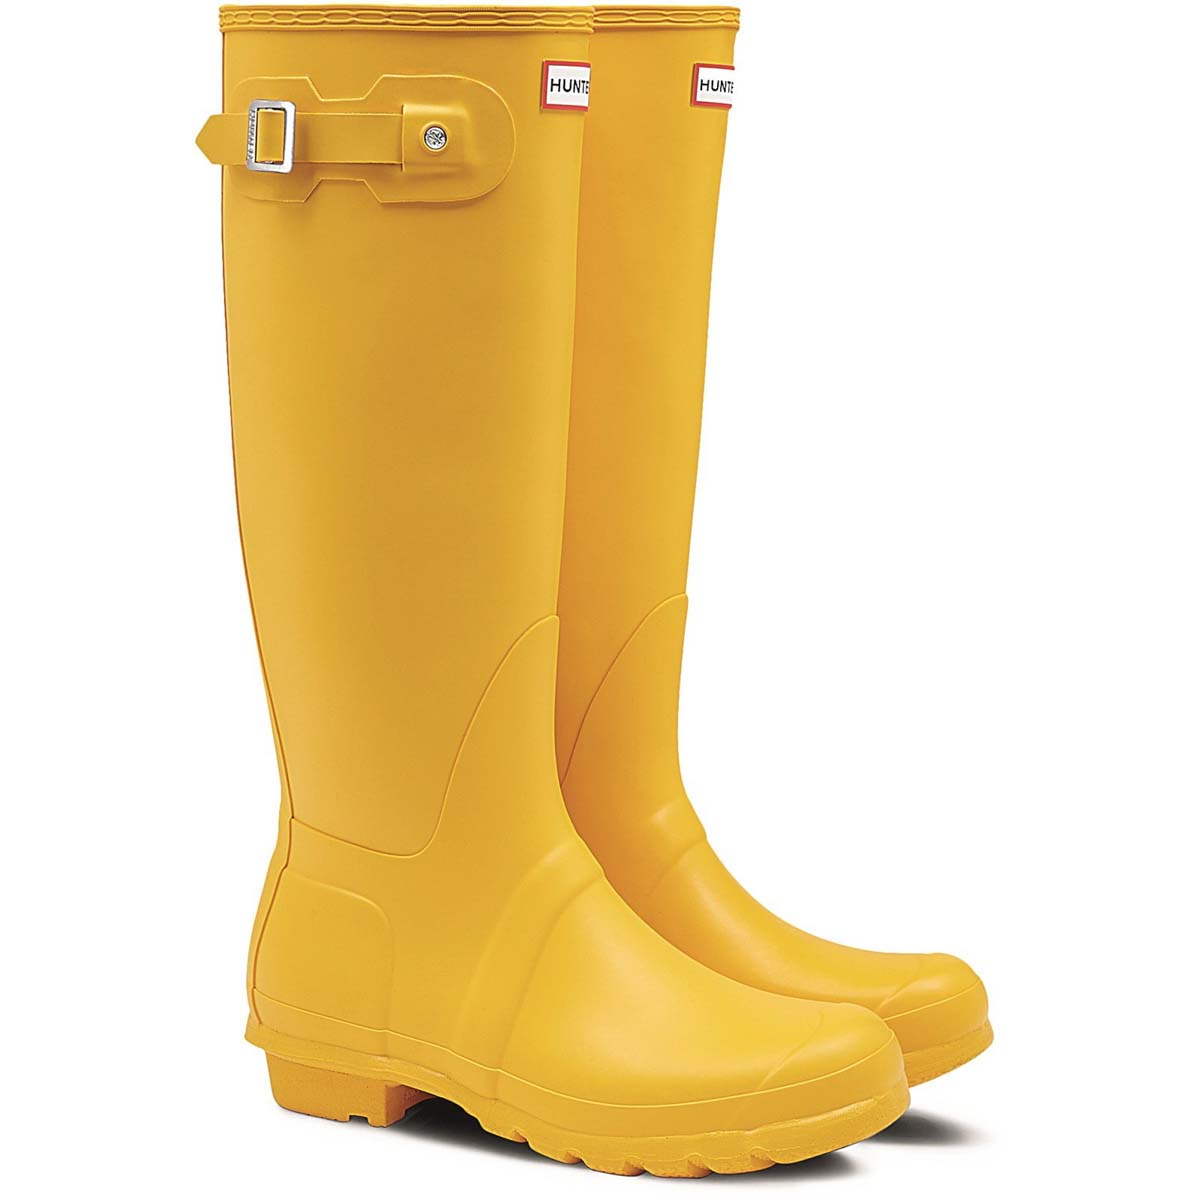 Hunter - Original Tall (Yellow) Wft1000Rma In Size 6 In Plain Yellow